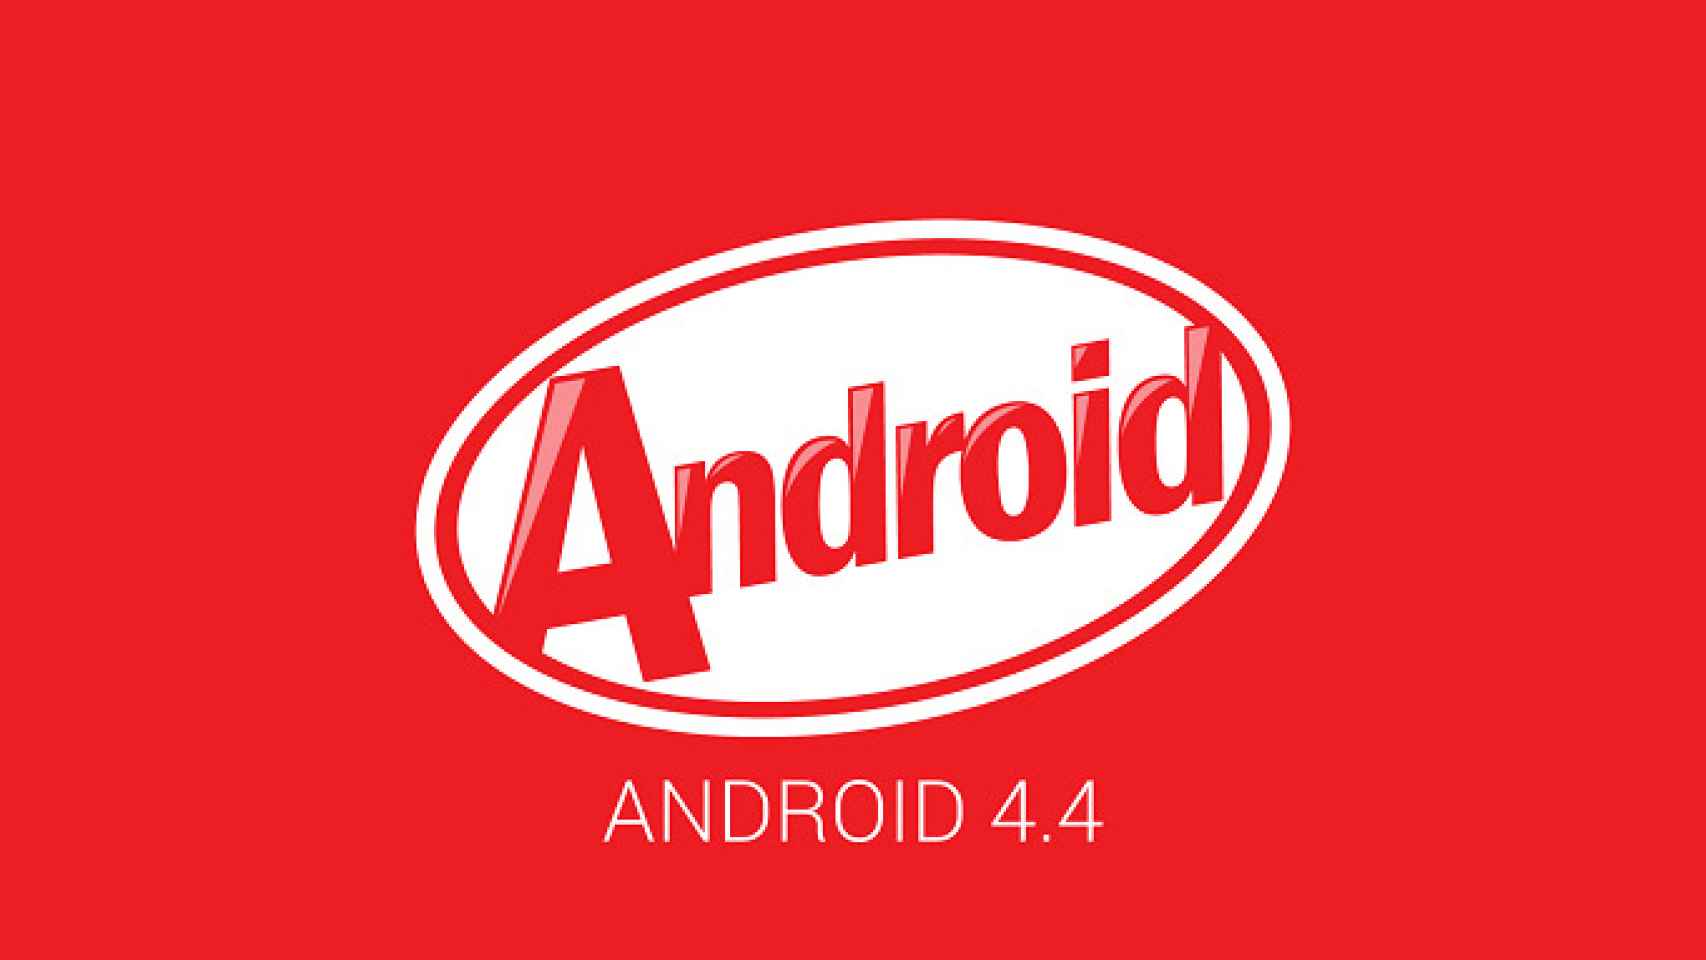 Android 4.4 KitKat empieza a llegar hoy a Nexus 7 y Nexus 10, muy pronto en Nexus 4